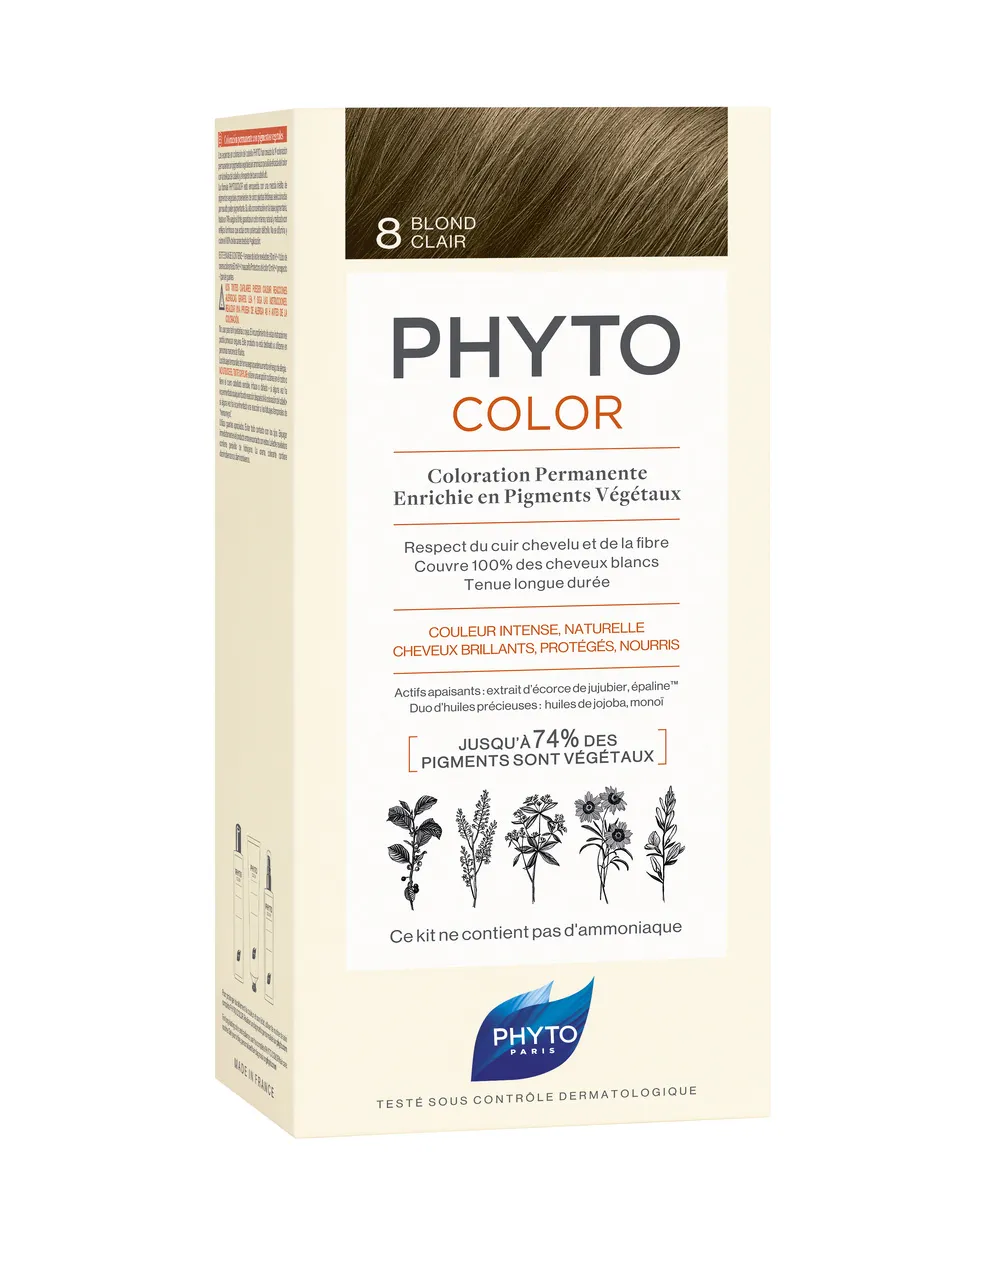 Phyto Color, farba do włosów, 8 jasny blond, 1 opakowanie